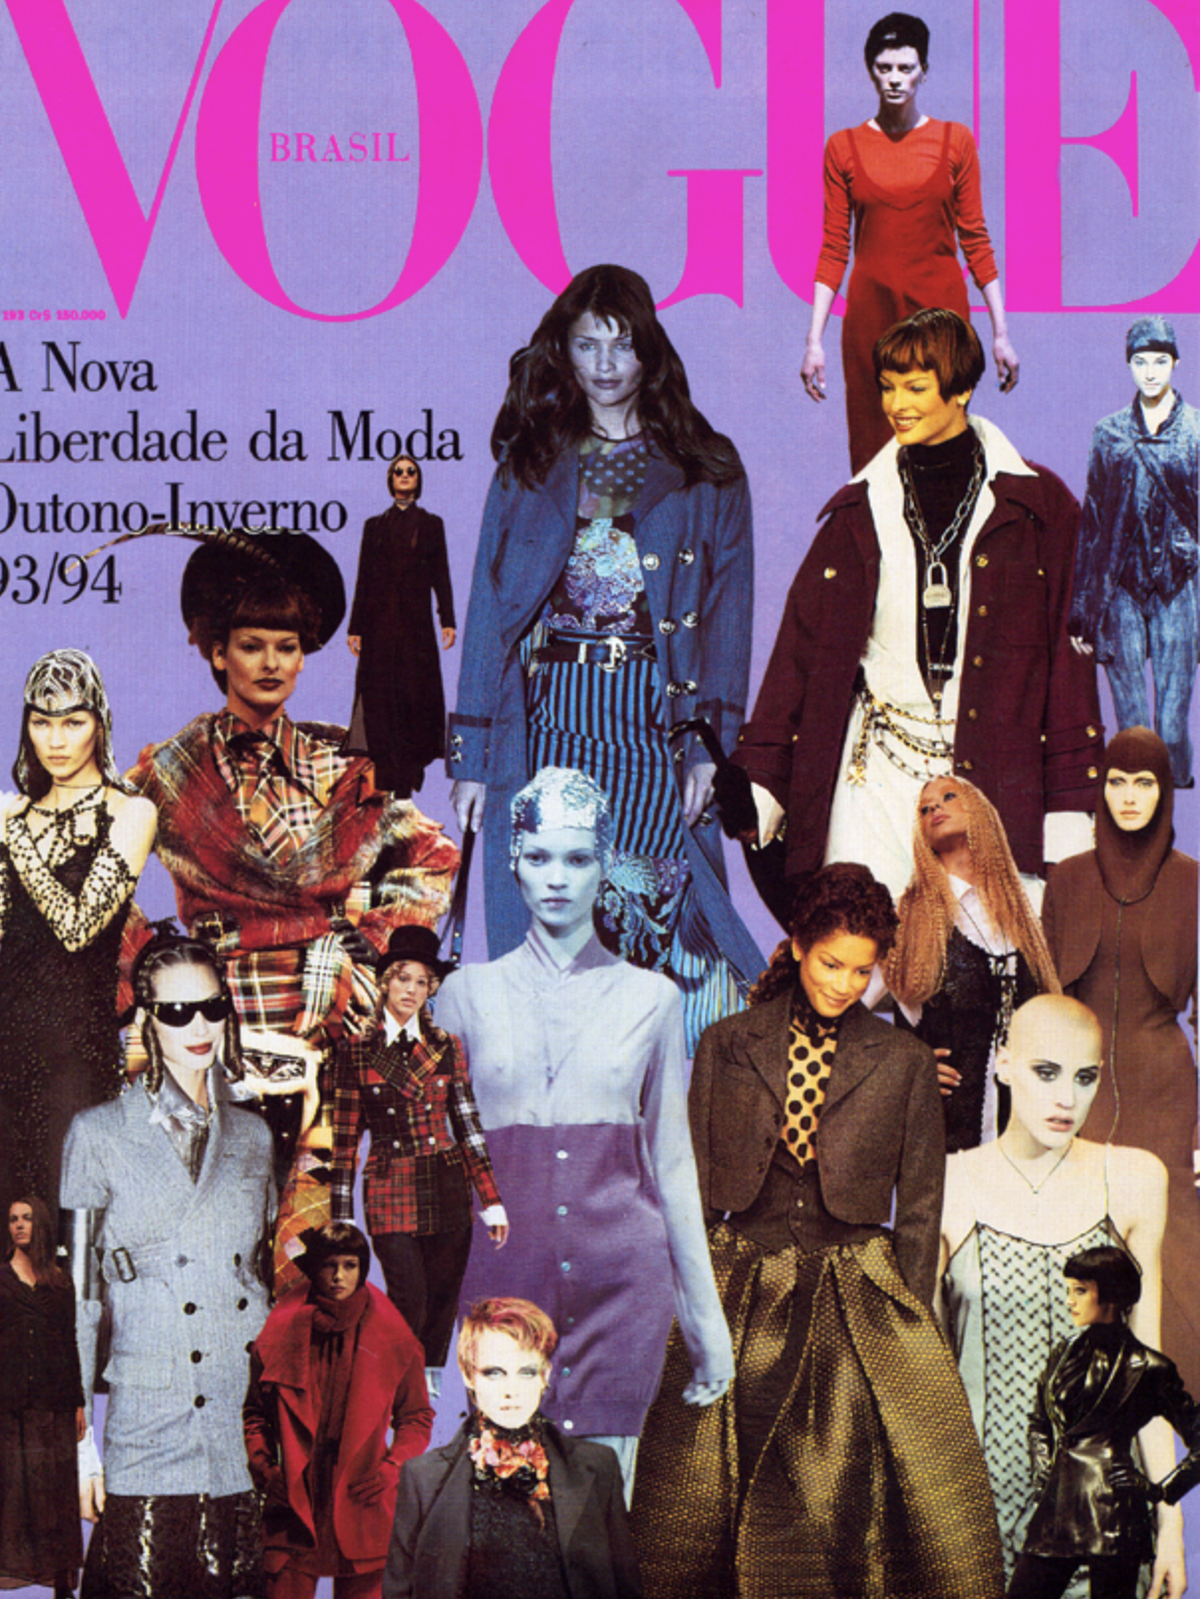 Vogue Brazil 1993